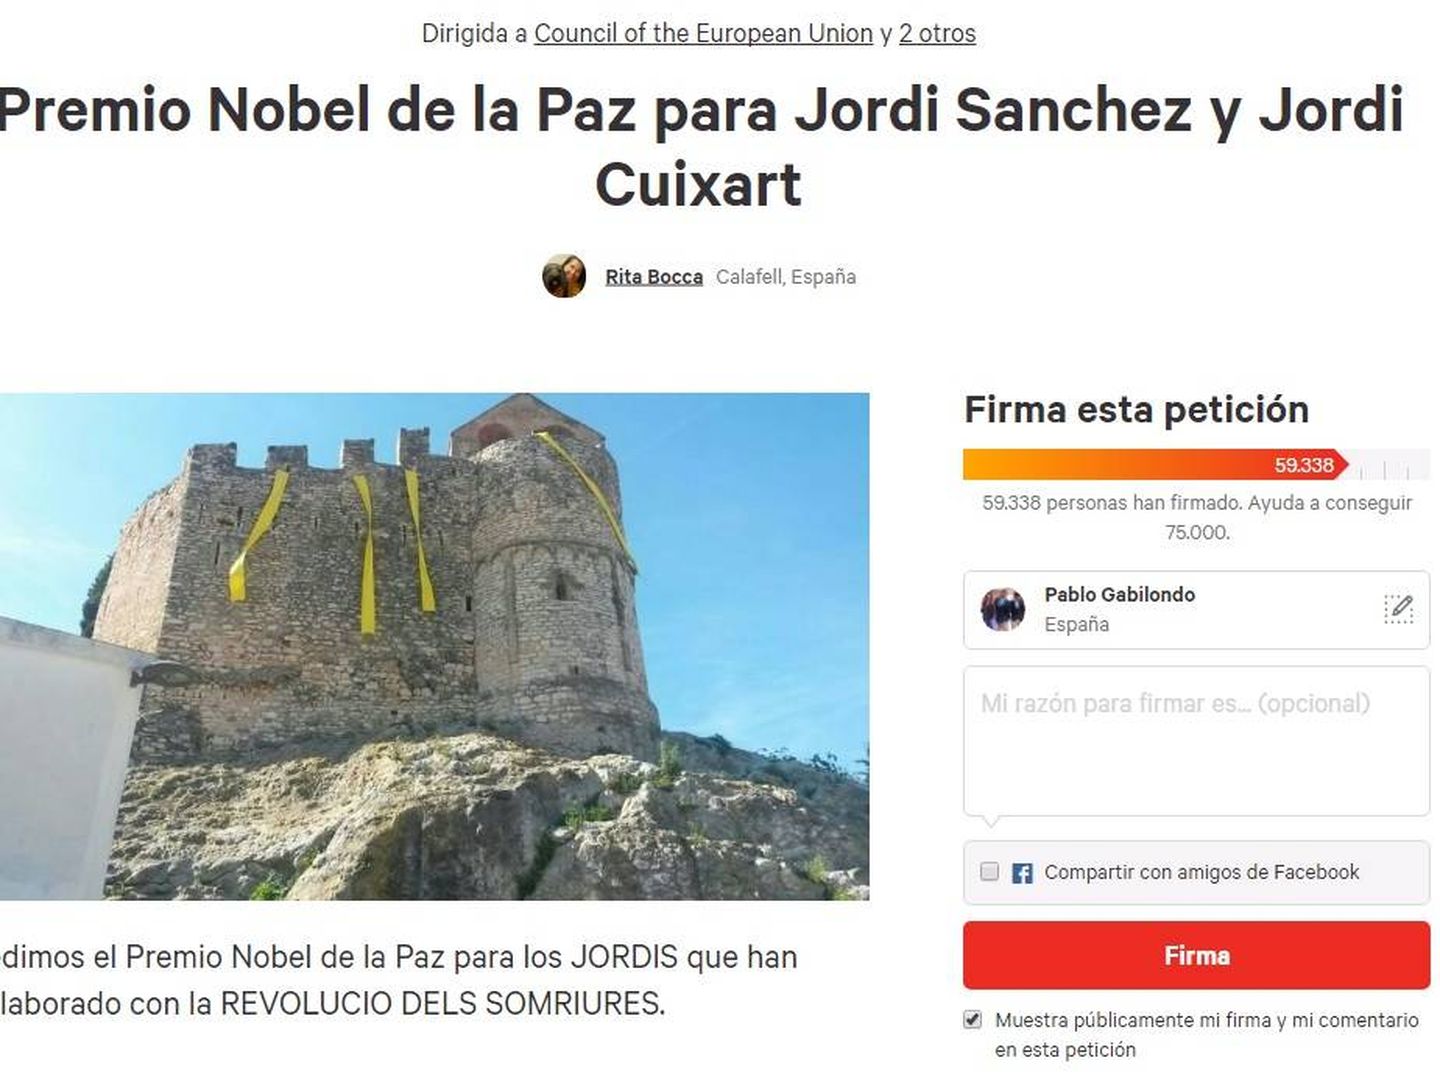 Más de 50.000 personas piden el Premio Nobel de la Paz para 'los Jordis'. (Change.org)